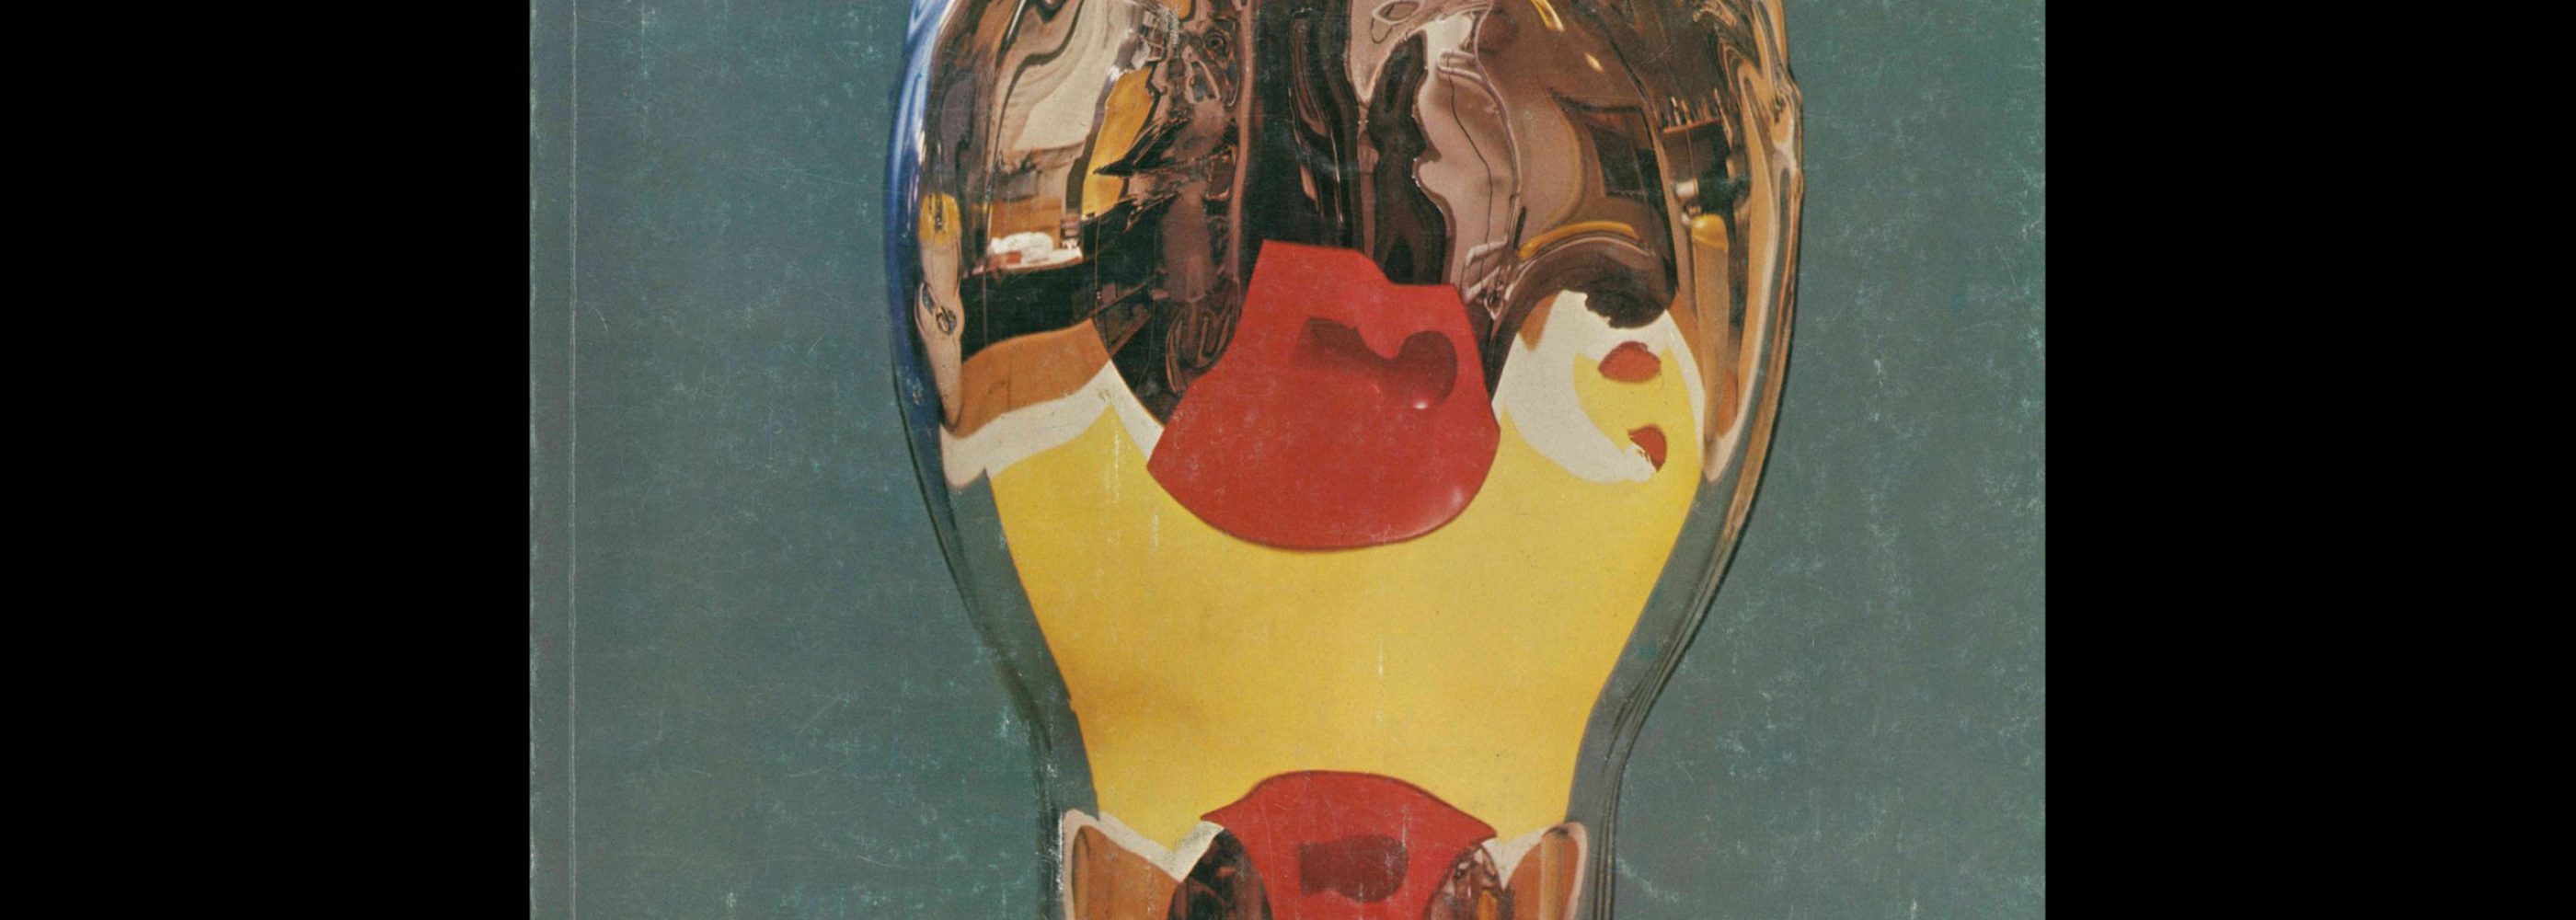 Novum Gebrauchsgraphik, 12, 1977. Cover design by Janos Kass